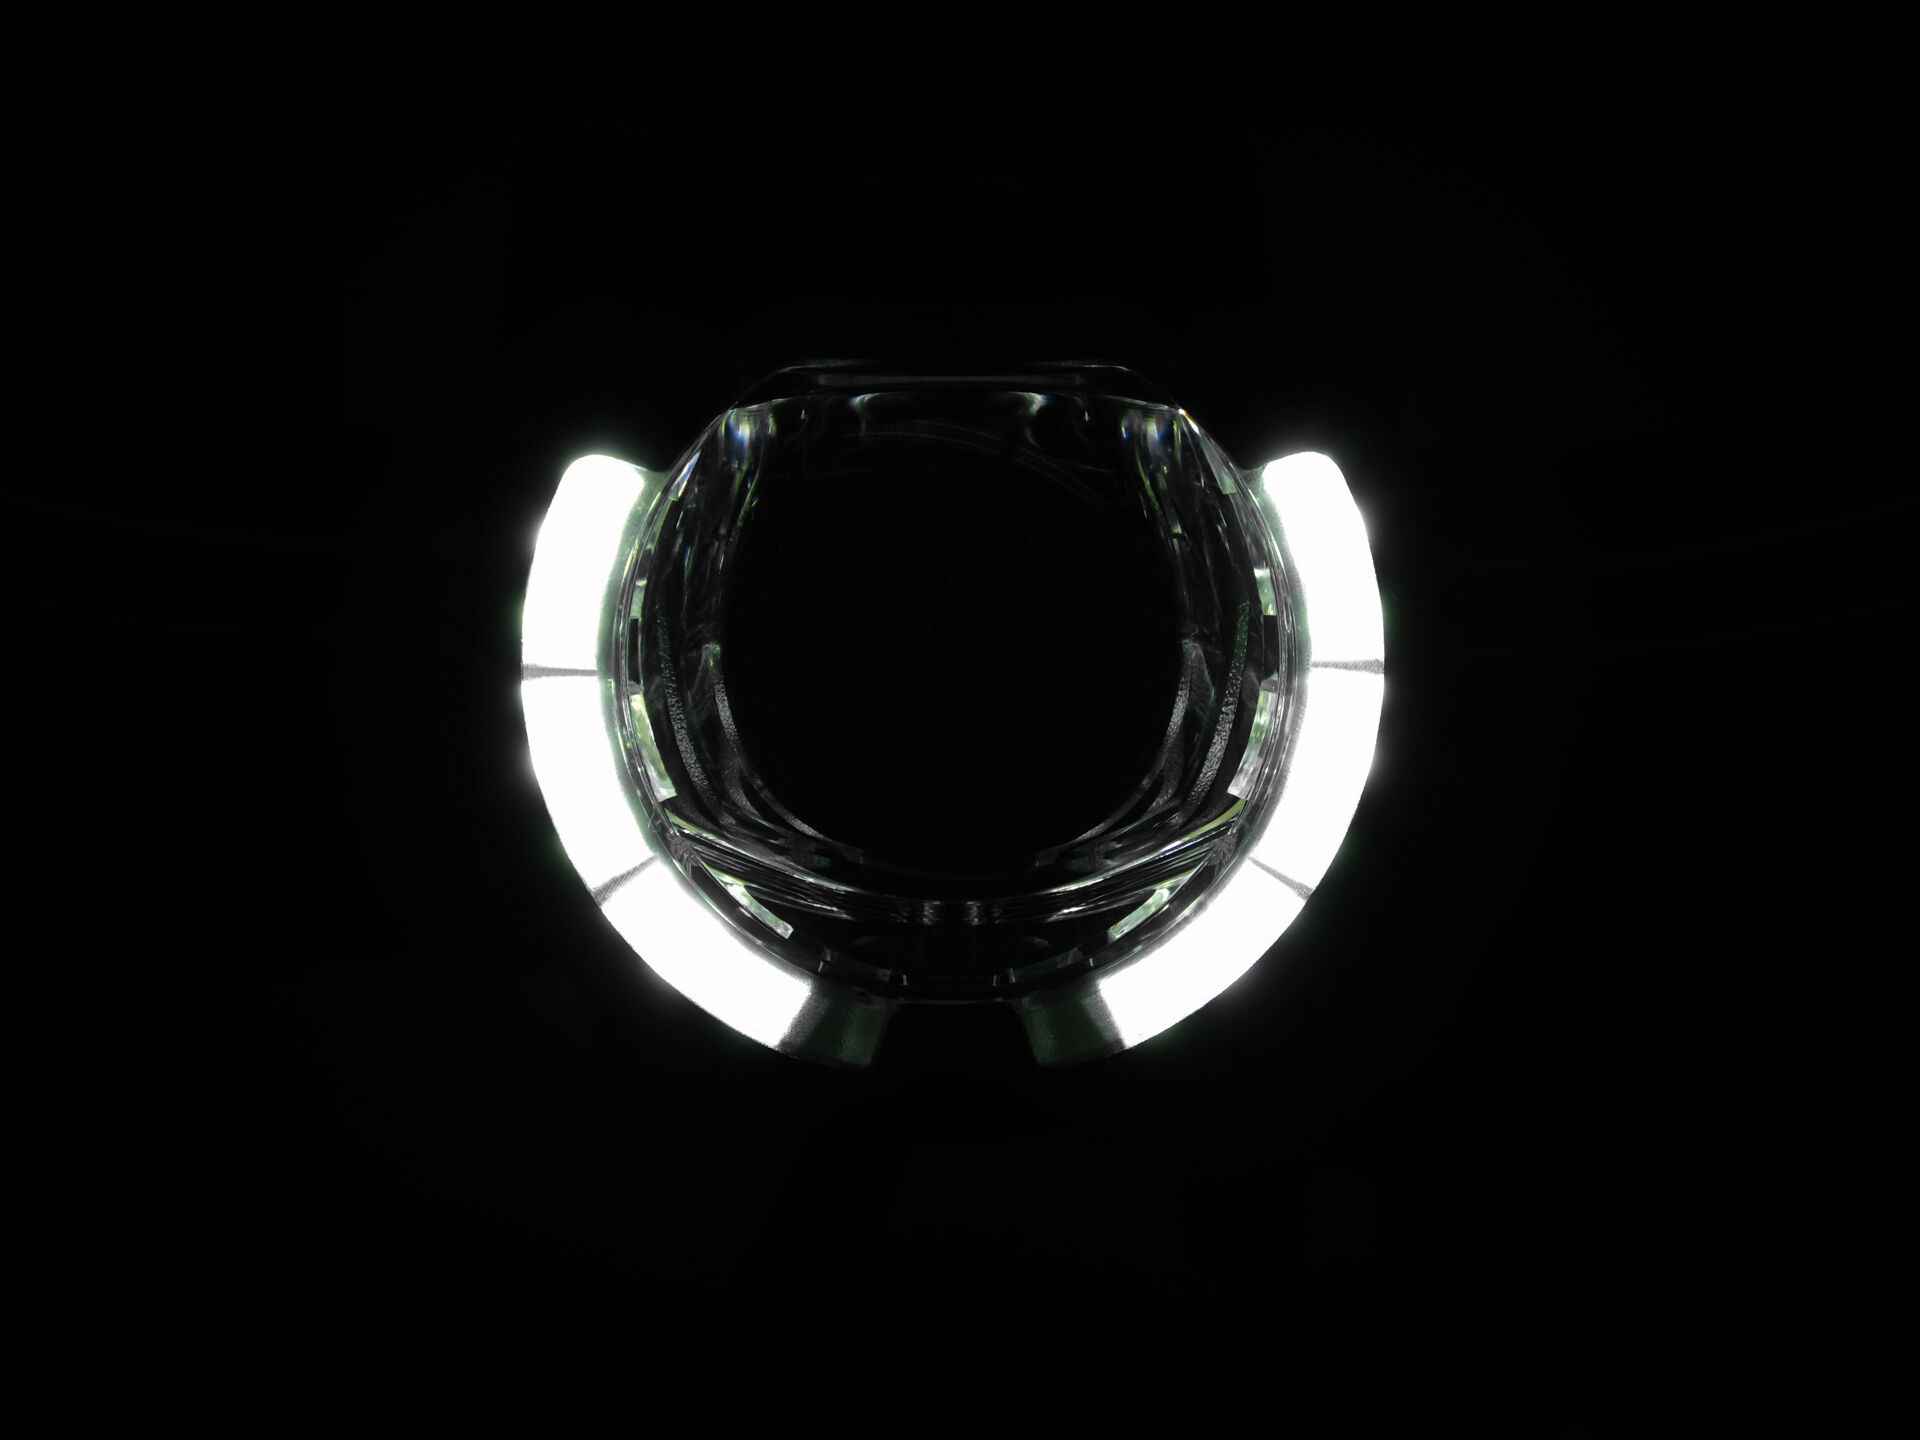 SL F BOSCH Purion/Kiox LED-Scheinwerfer mit Auf-/Abblendlicht